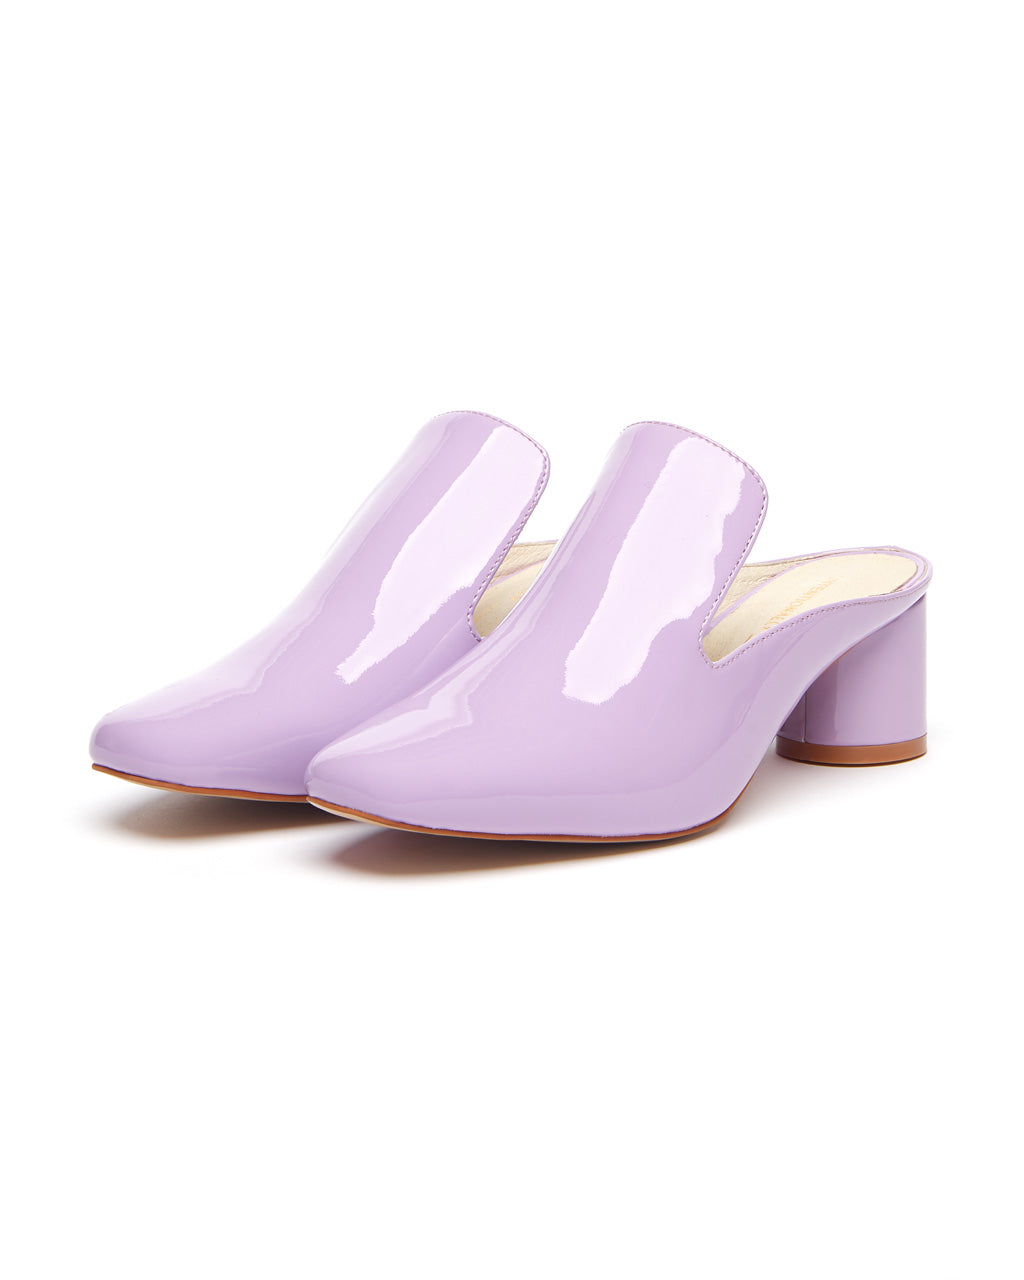 purple patent shoes